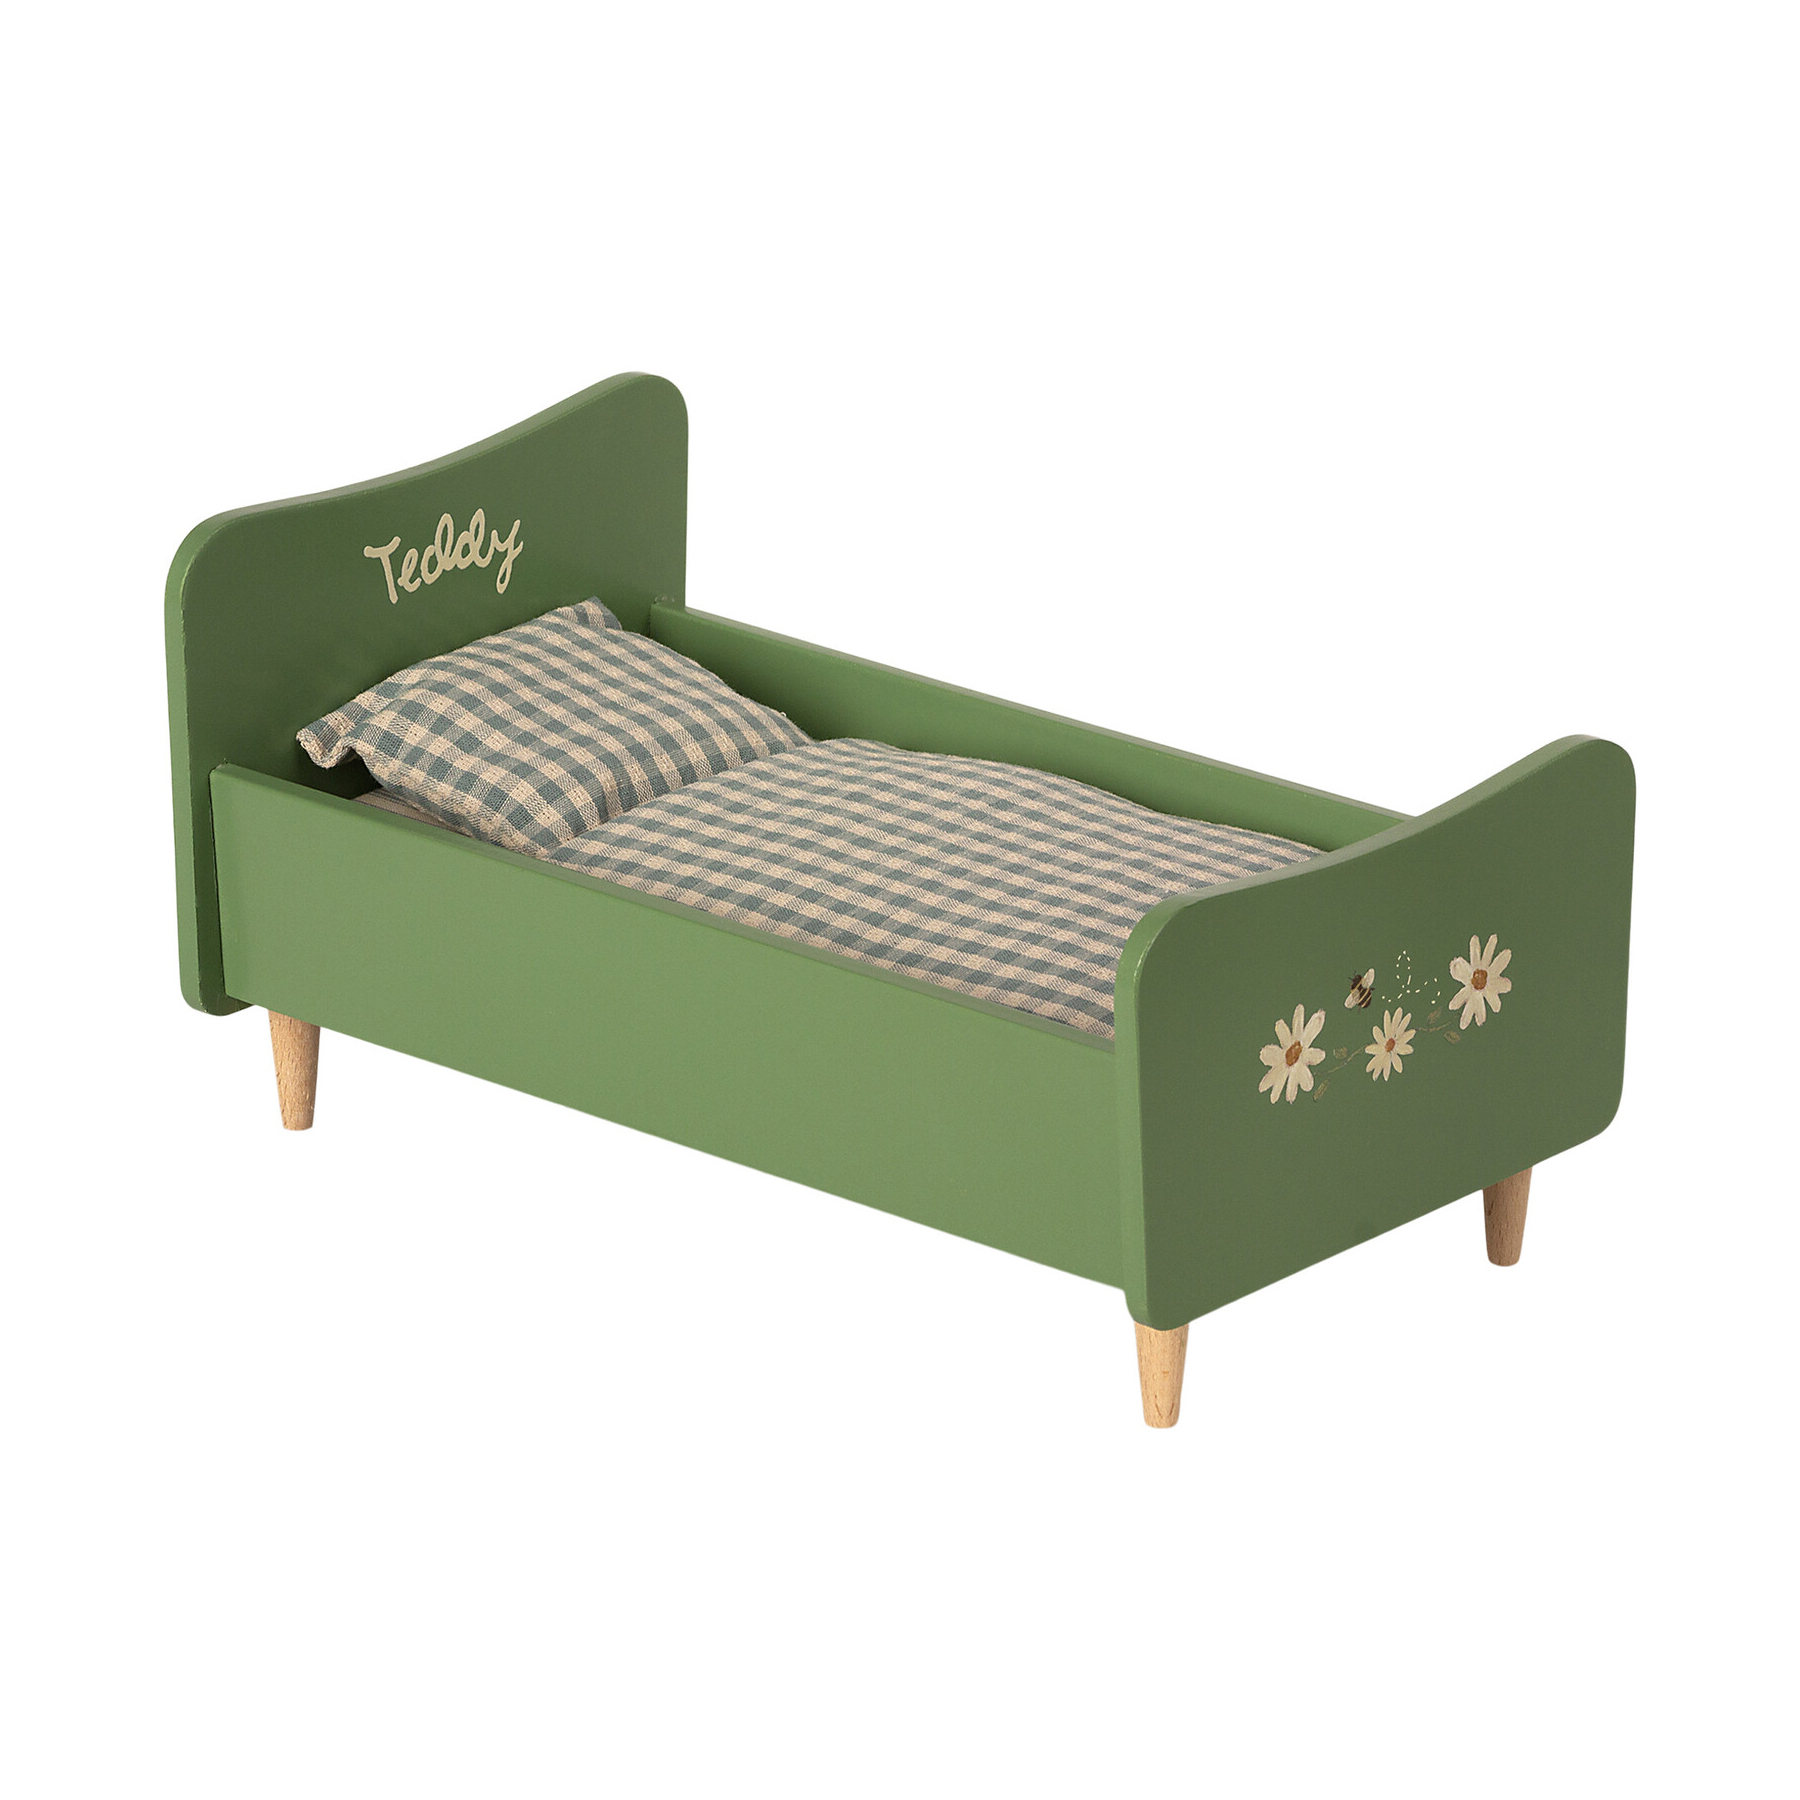 Деревянная кровать для папы Мишки Тедди, зеленая, '21